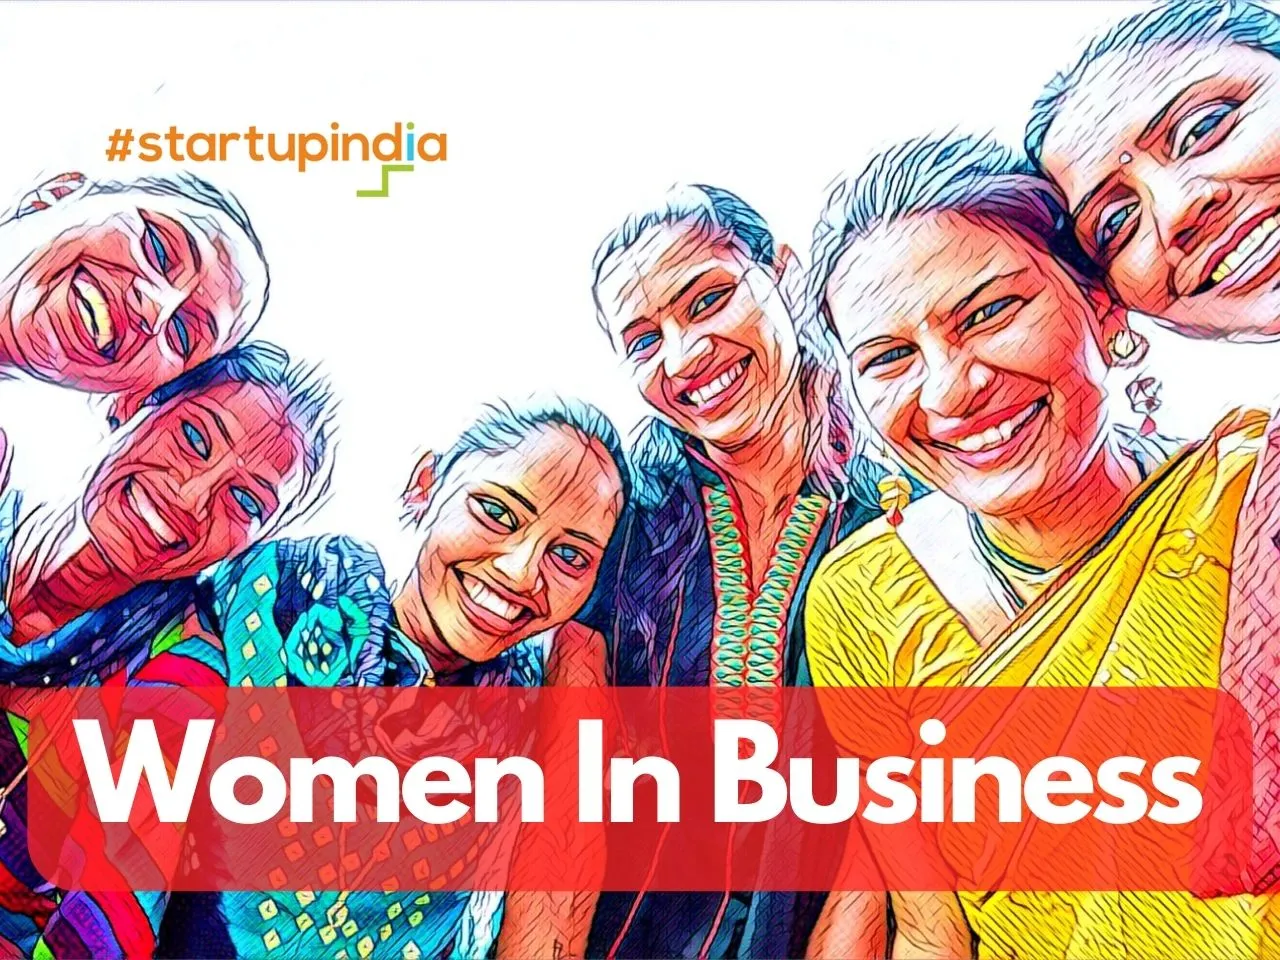 Smriti Irani Applauds Startup India's Empowerment of Women in Business